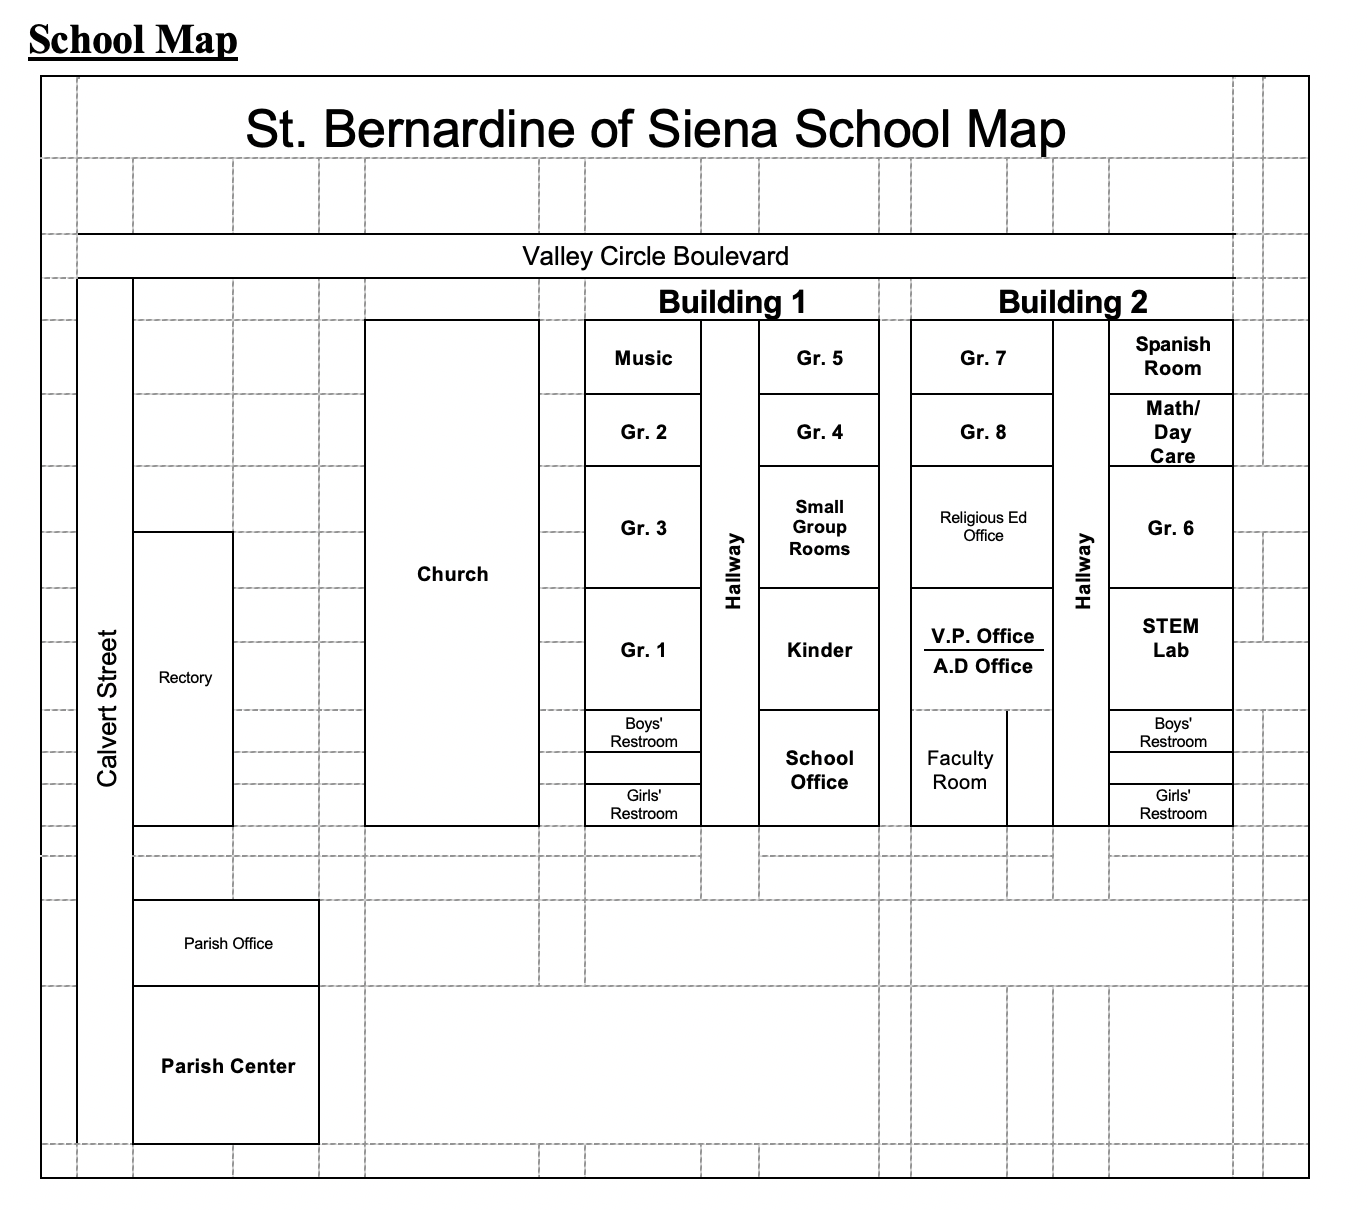 School Map.png